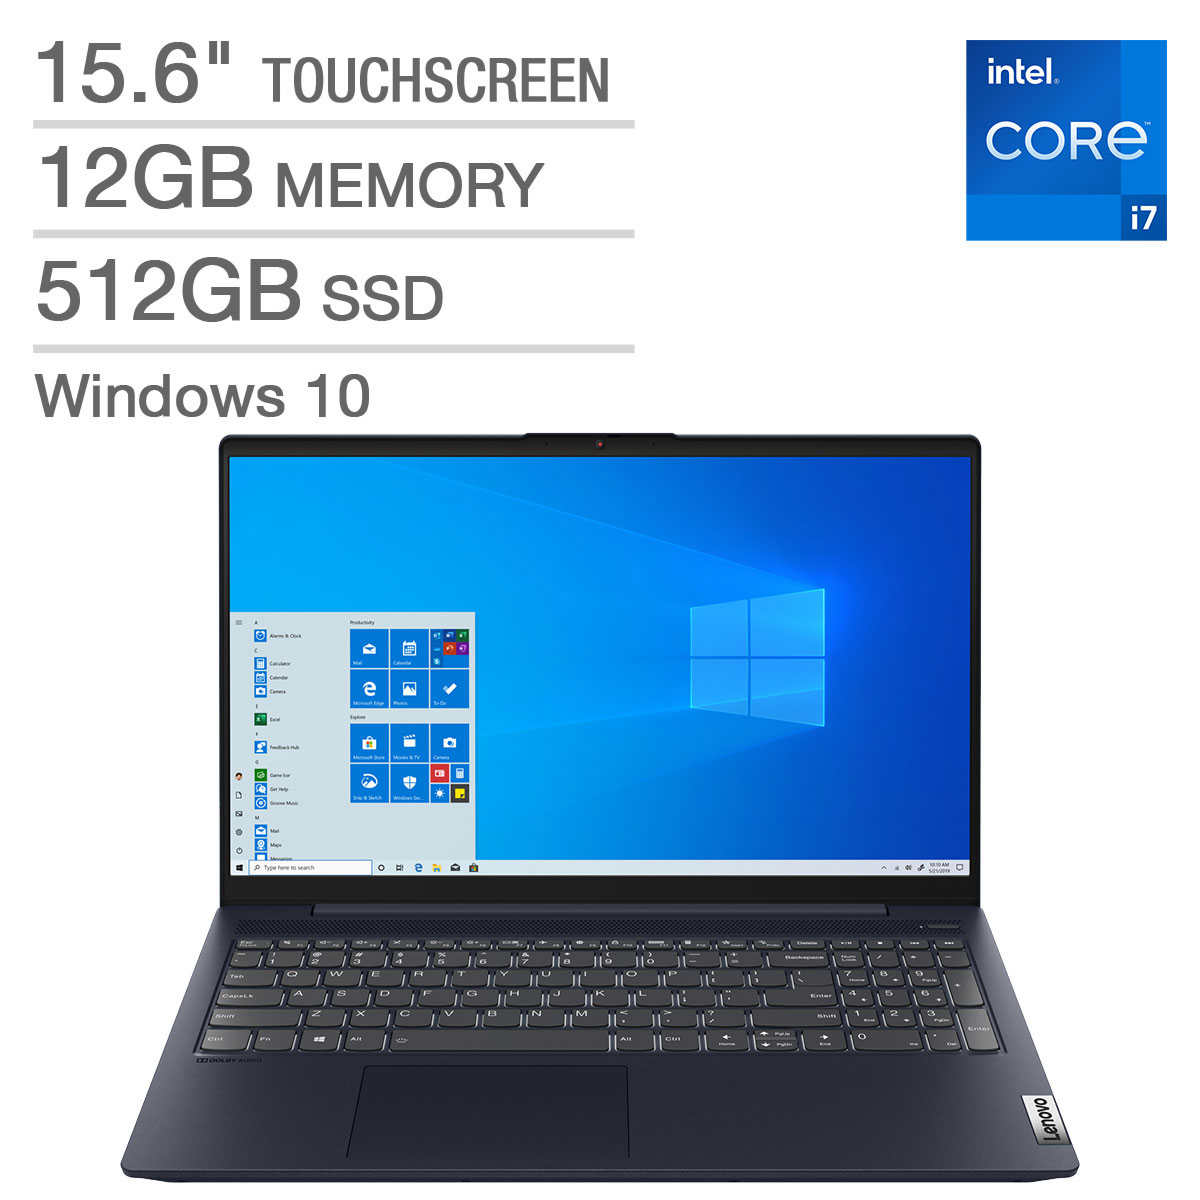 Lenovo Ideapad 5 15 6 Touchscreen Laptop 11th Gen Intel Core I7 1165g7 1080p Costco